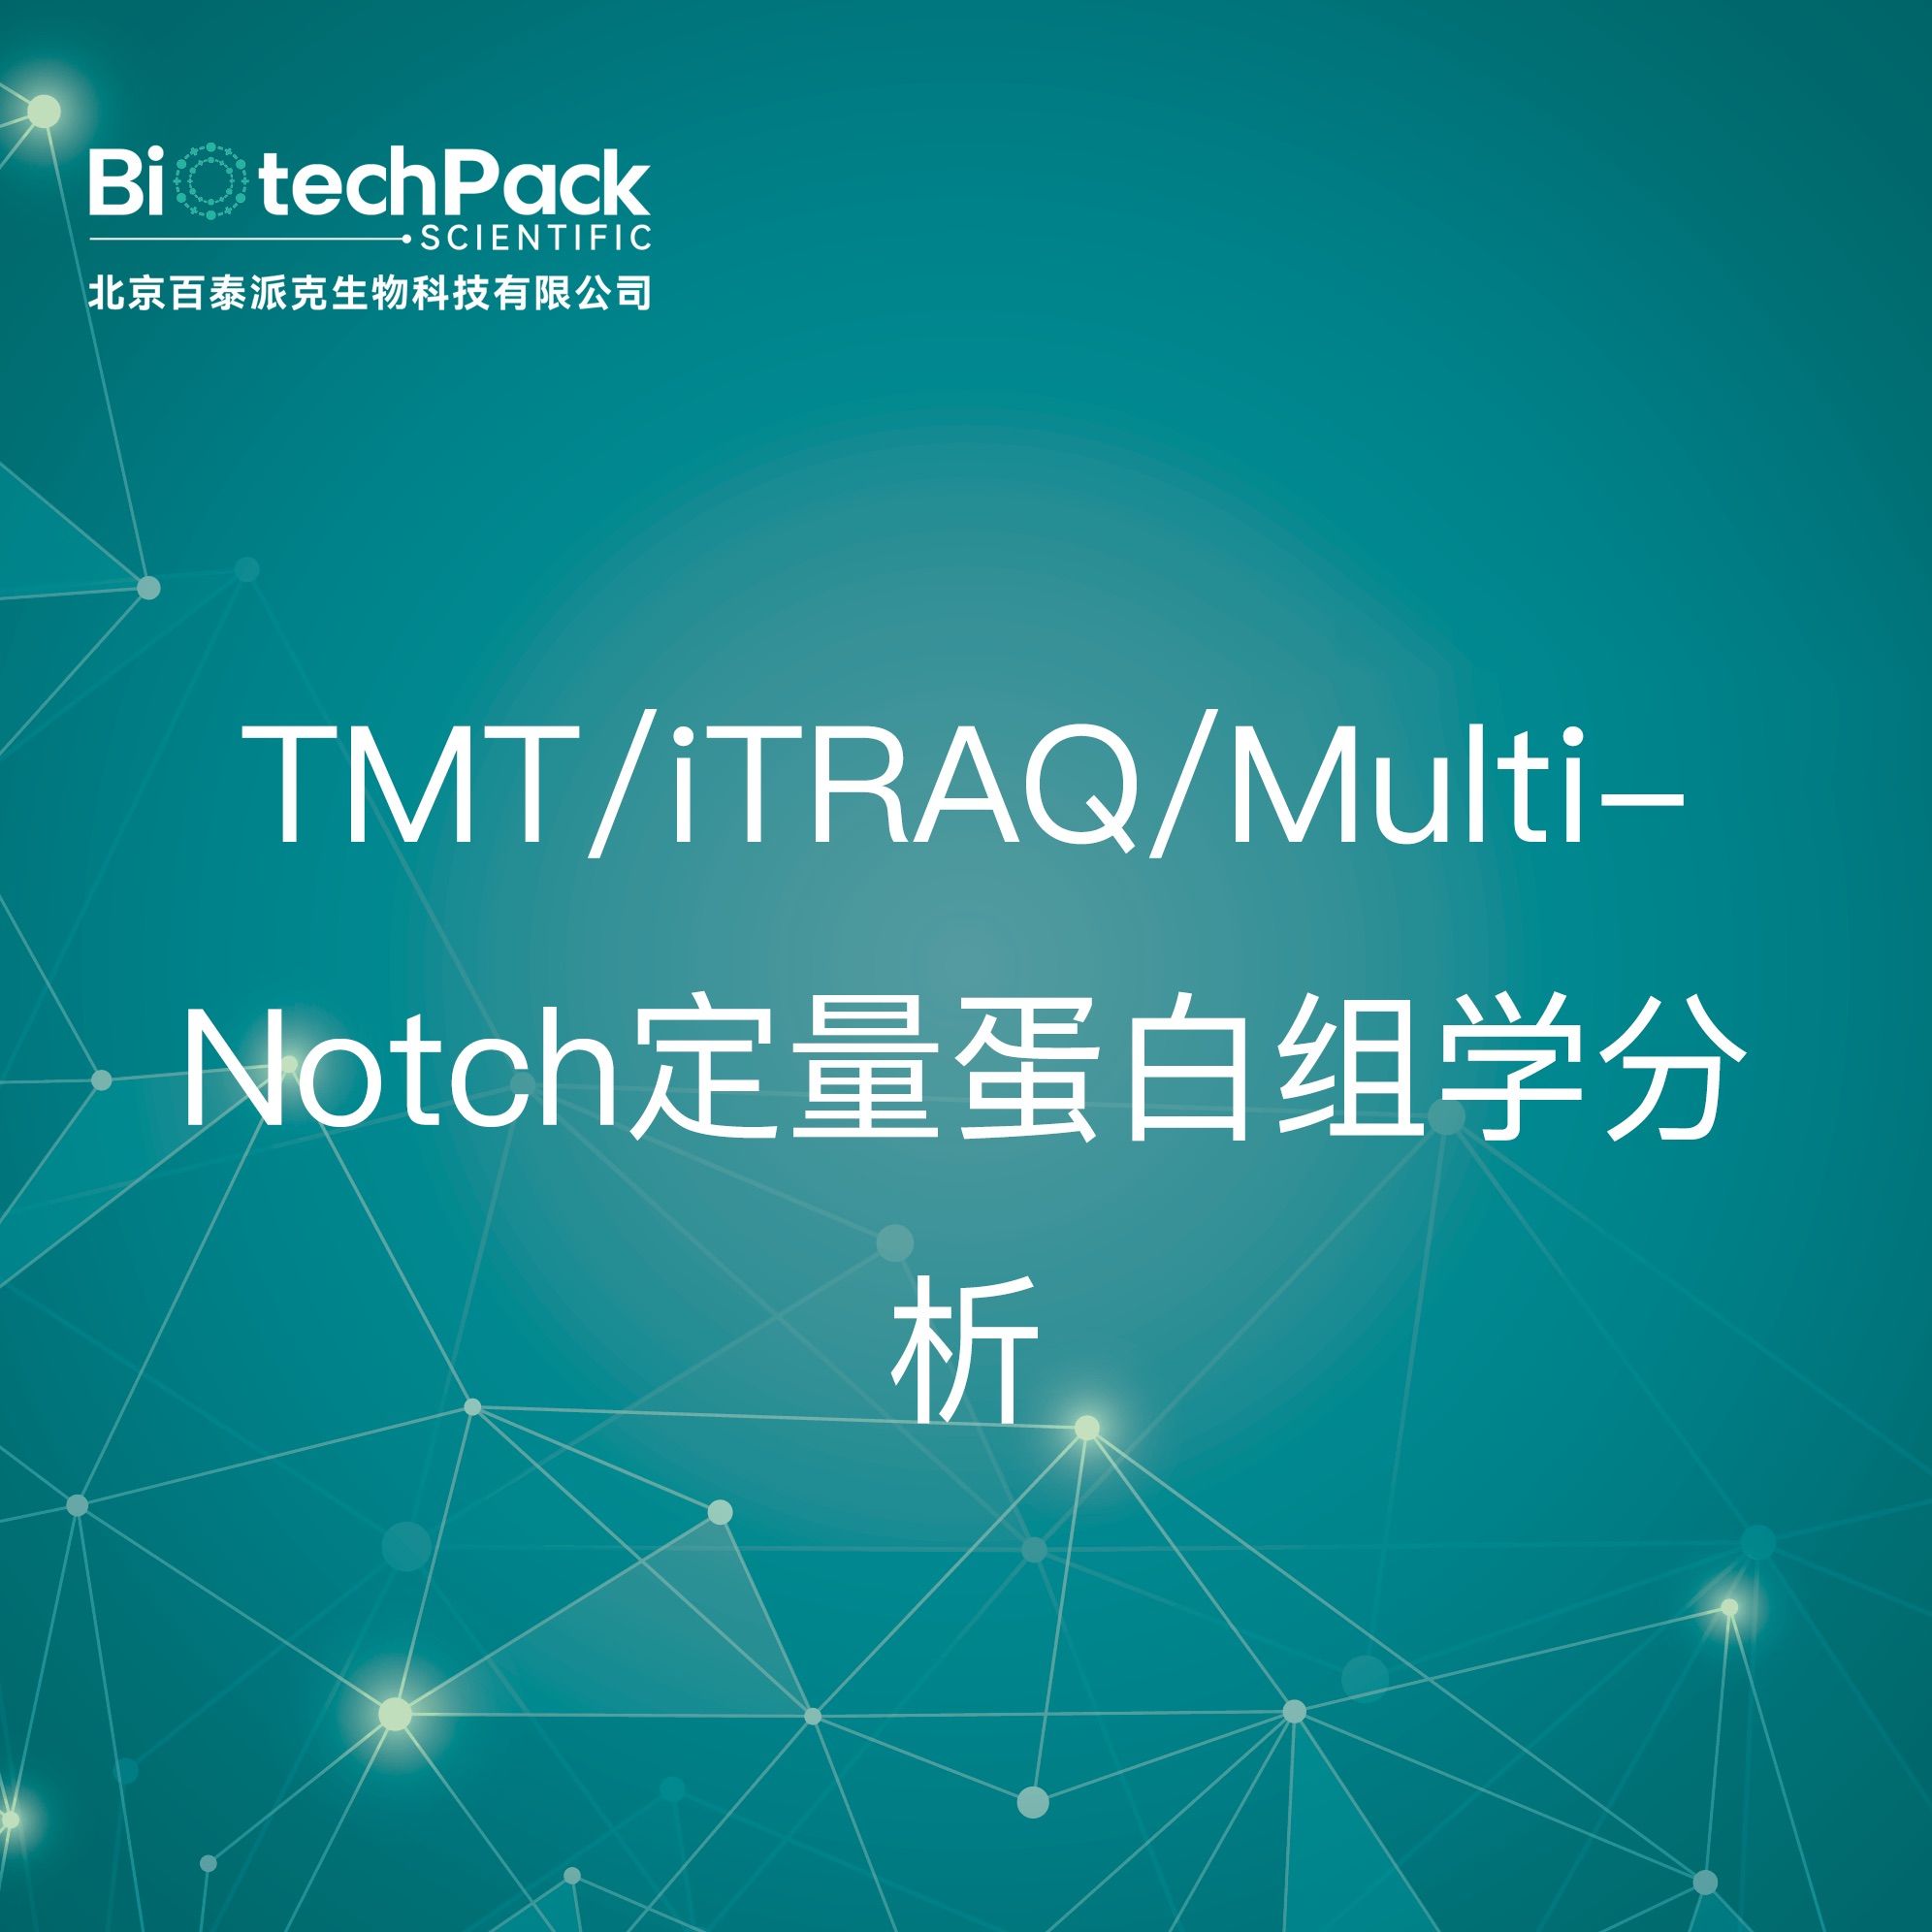 蛋白分析-TMT/iTRAQ/MultiNotch定量蛋白组学分析技术服务